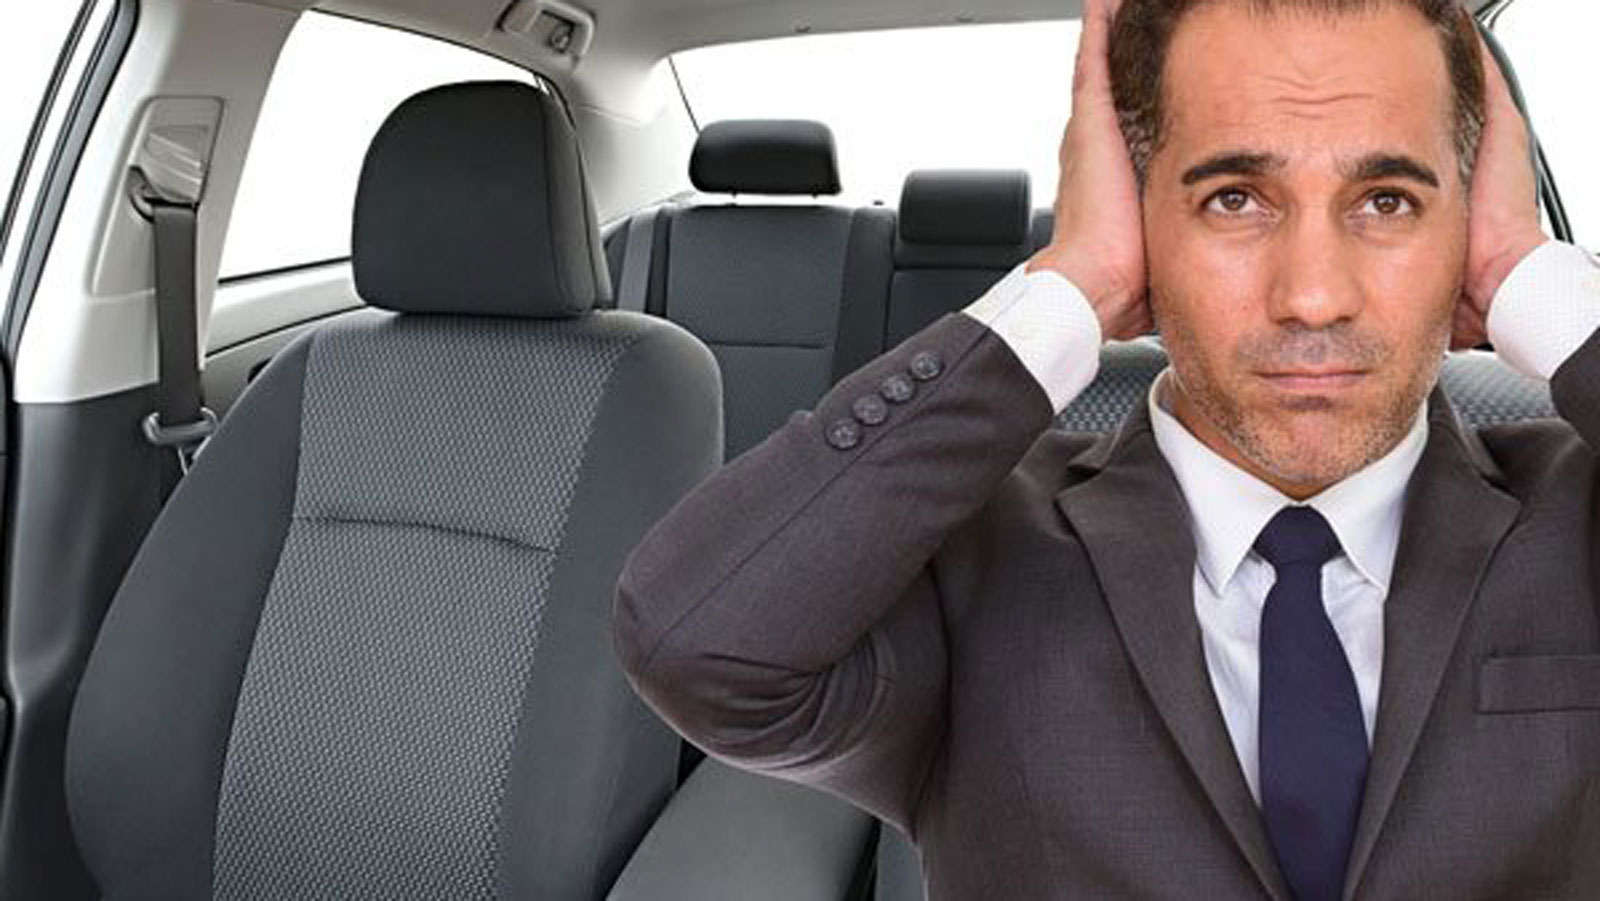 Η συνεχής έκθεση σε θόρυβο άνω των 70 ντεσιμπέλ στο εσωτερικό ενός αυτοκινήτου αυξάνει των κίνδυνο κατάθλιψης κατά 65% σύμφωνα με σχετική έρευνα.